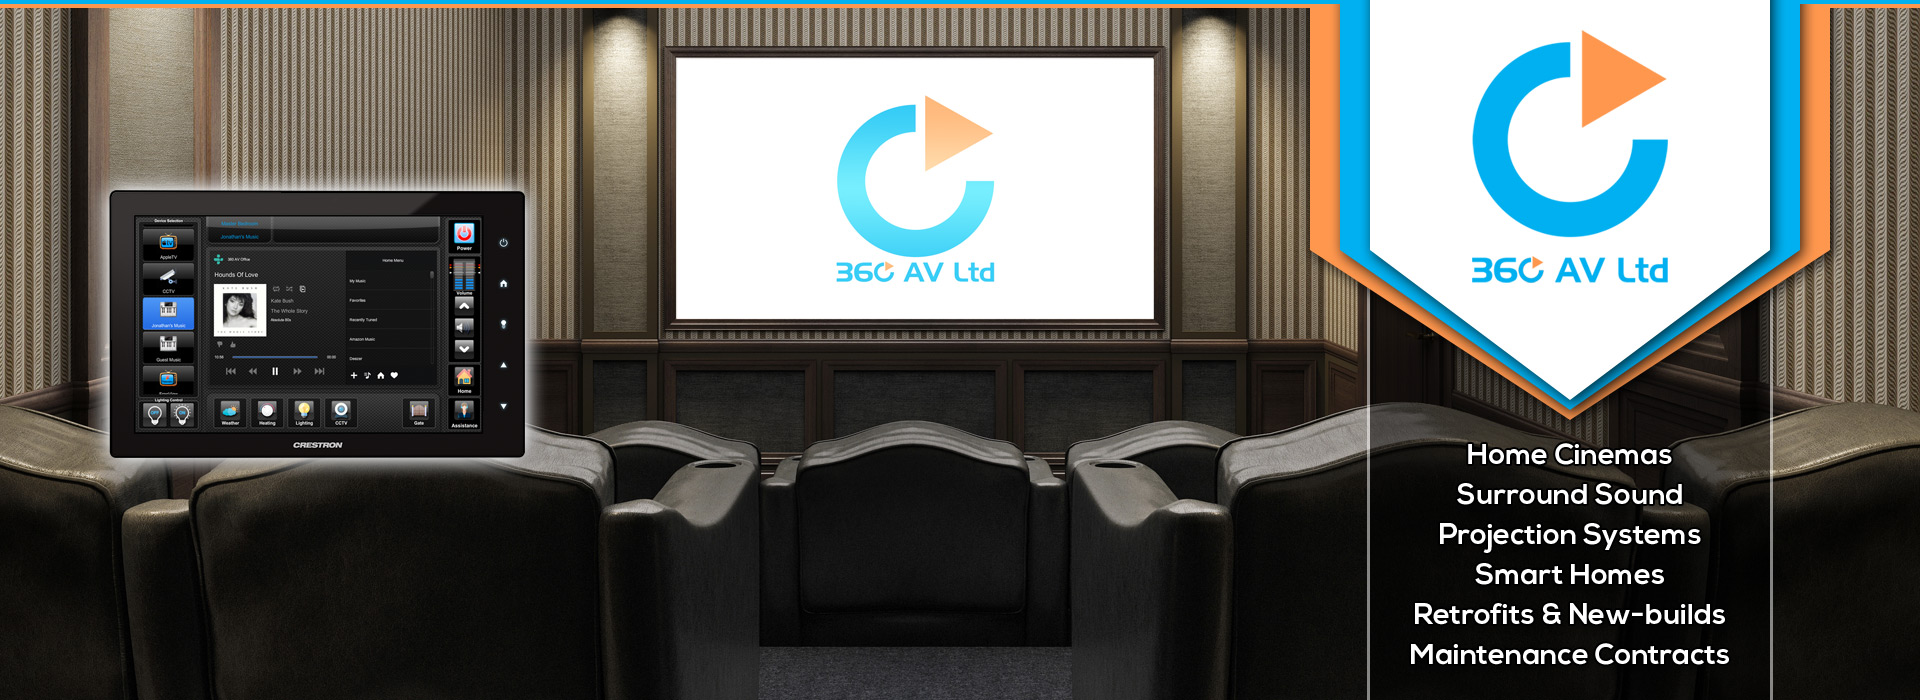 360 AV Ltd | Home Cinema System